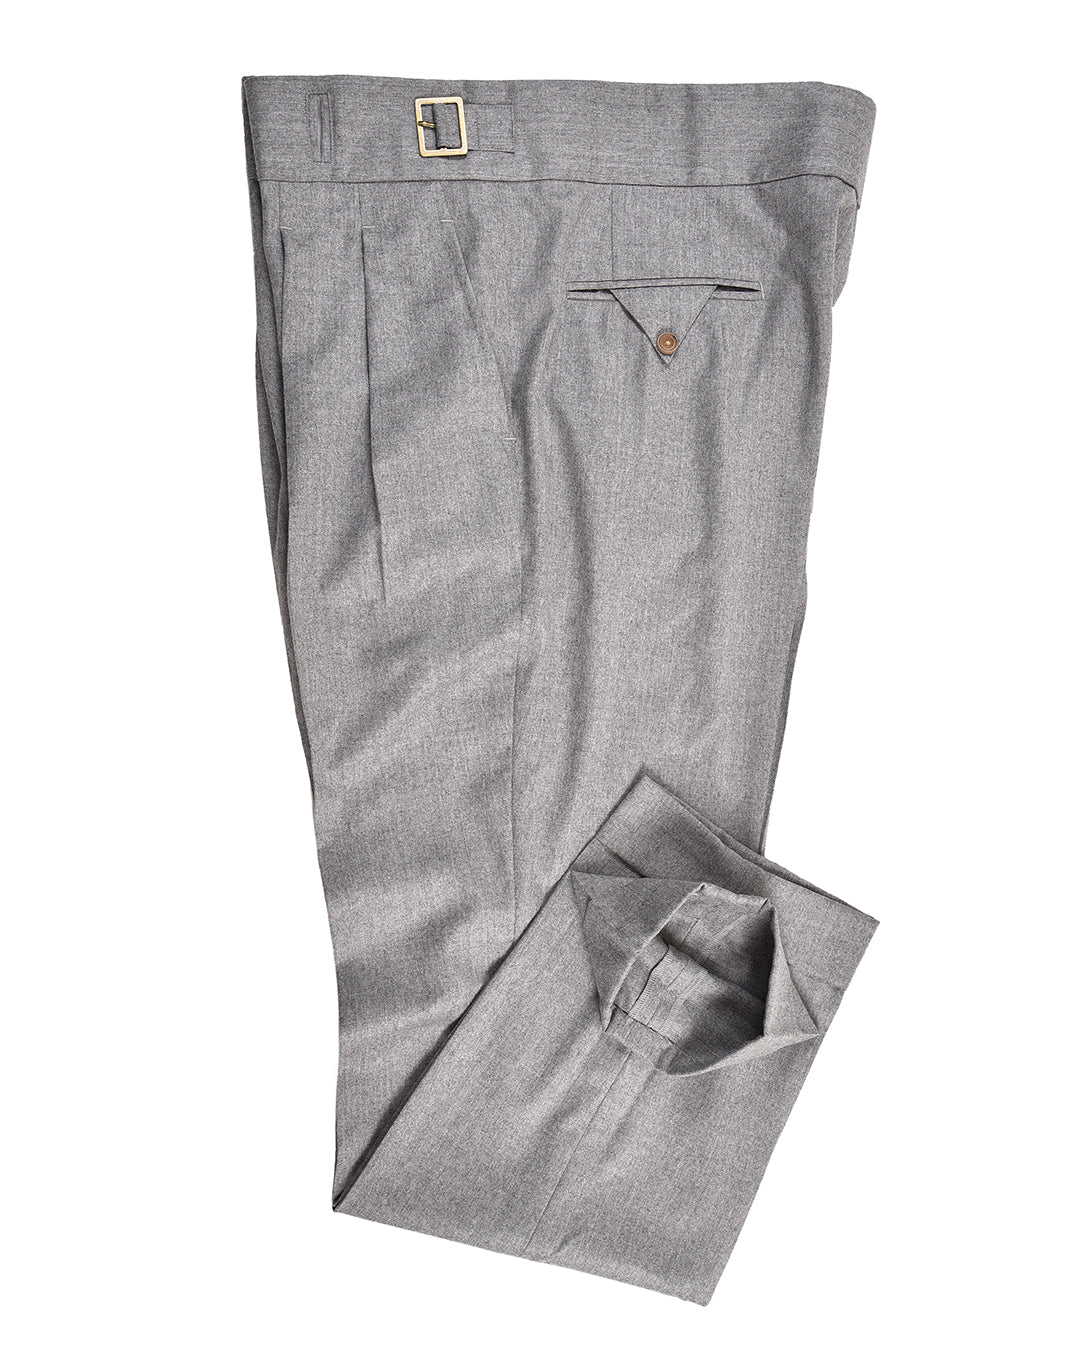 Side profile of Gurkha Pant in Vitale Barberis Canonico Flannels Light Grey